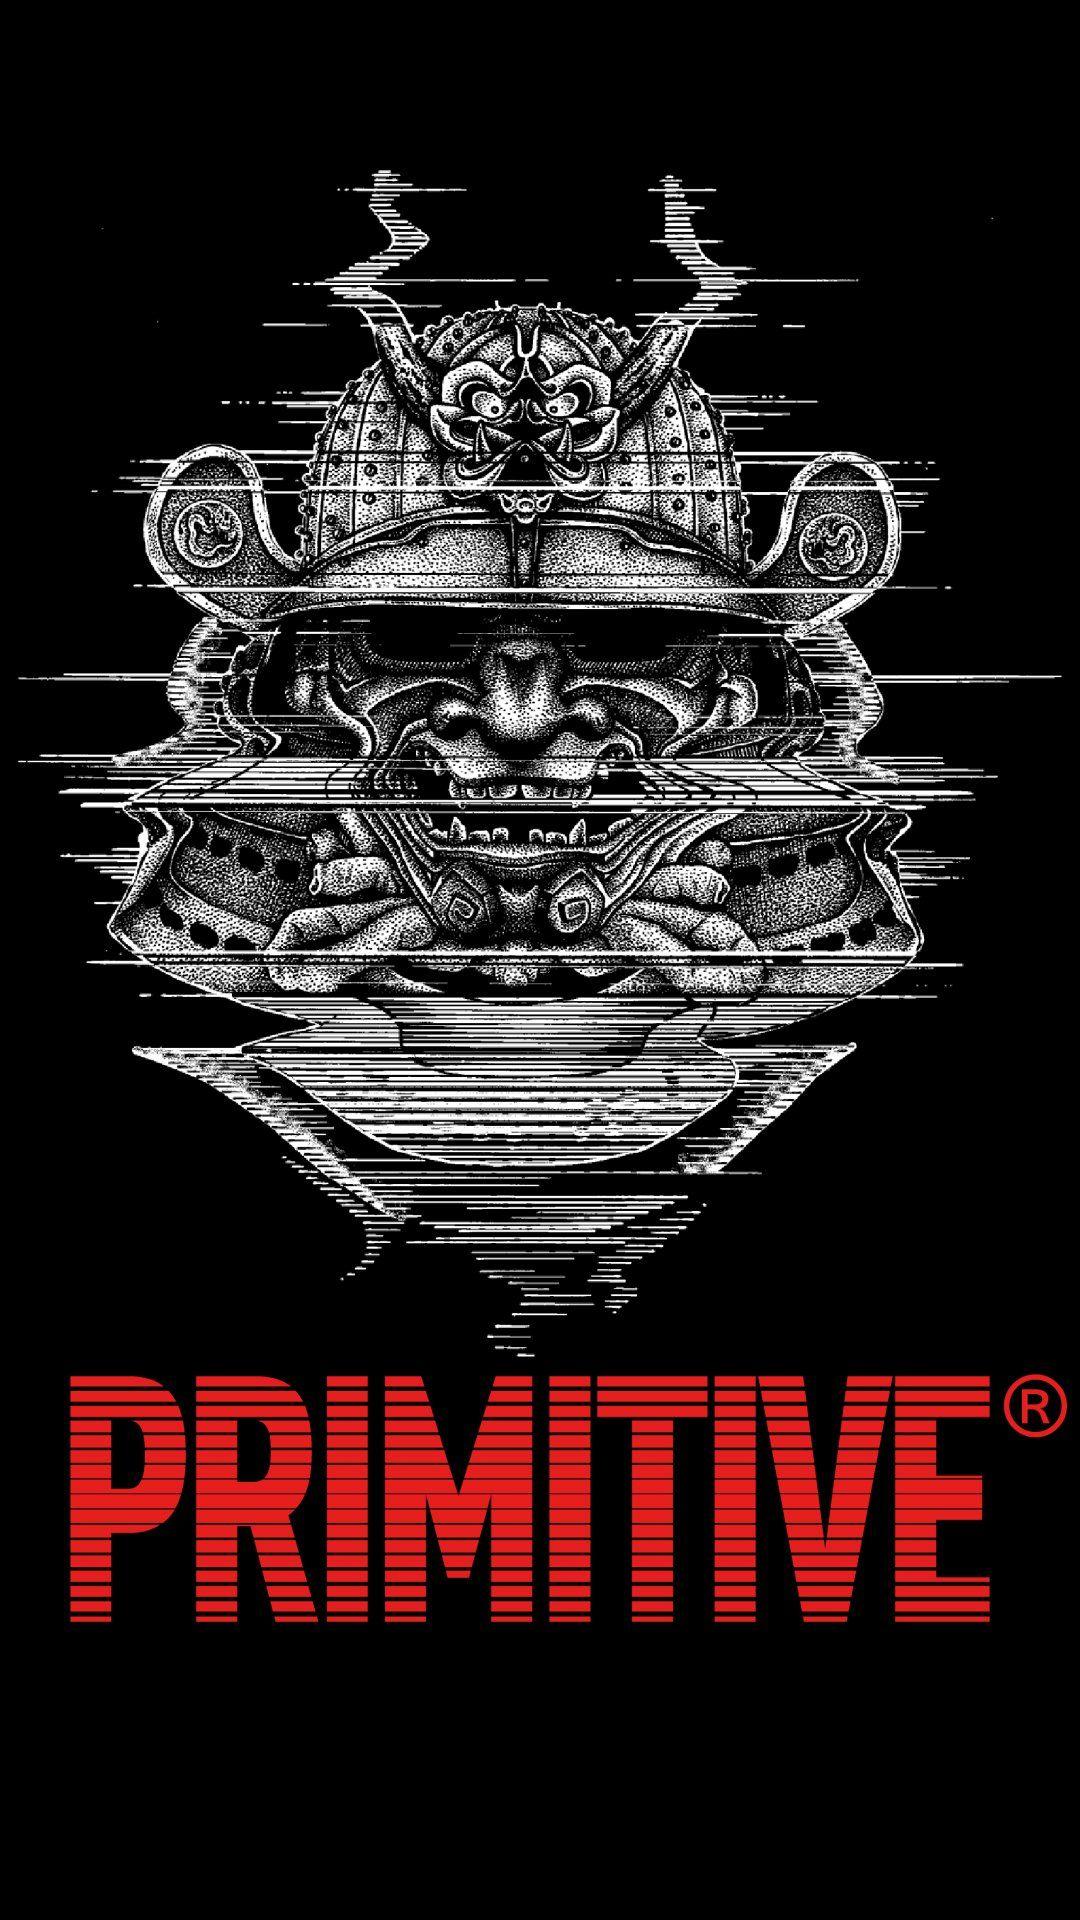 Primitive Brand Logo - Wallpapers - Primitive Skateboarding